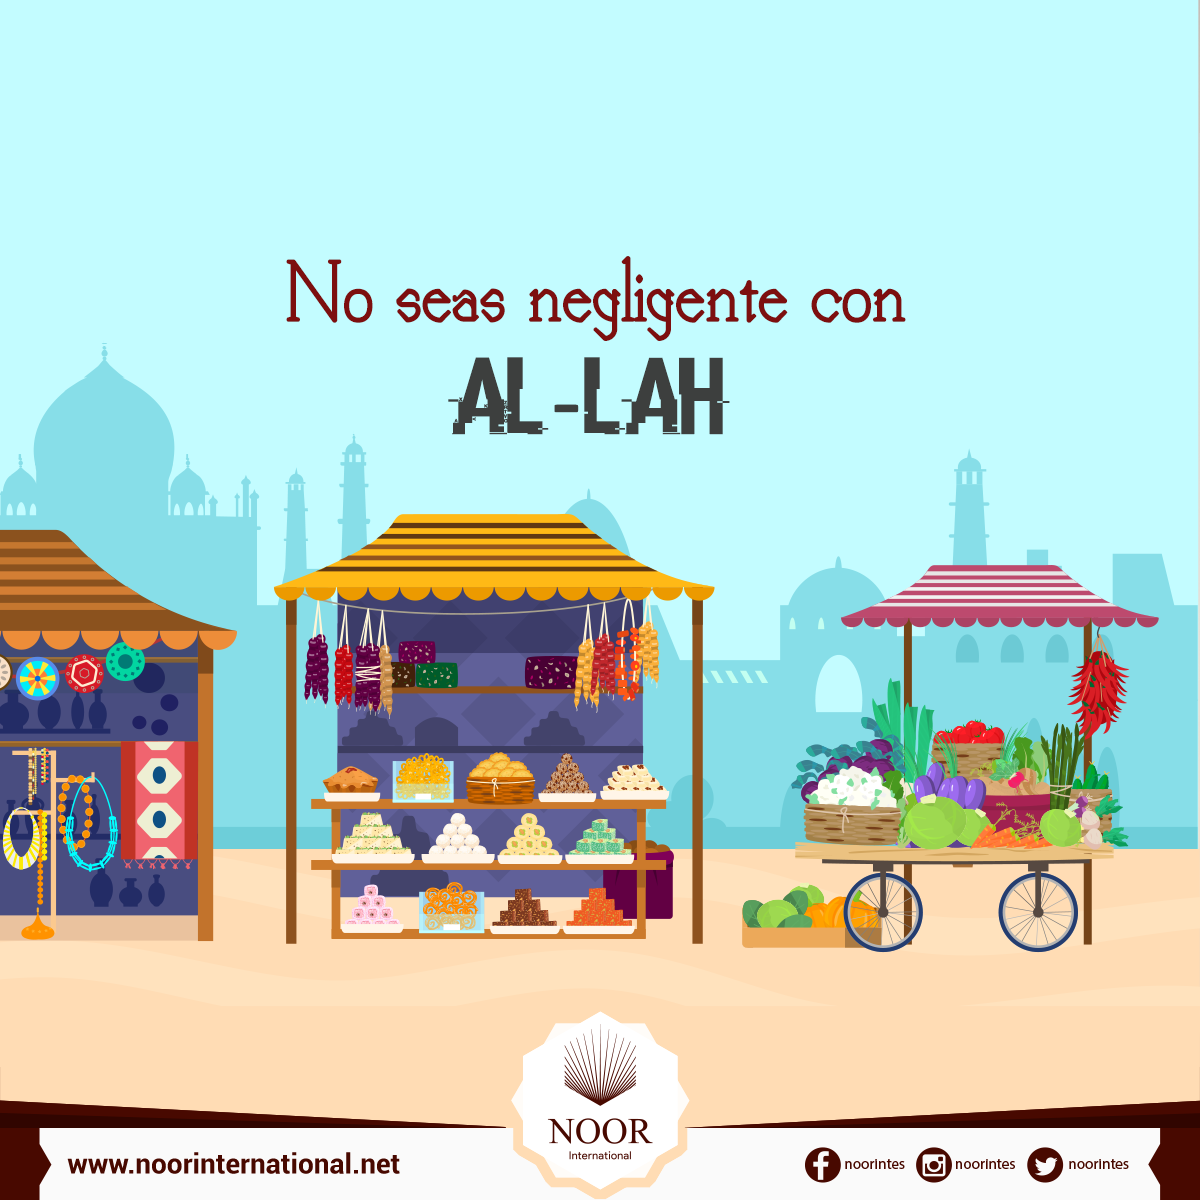 No seas negligente con Al-lah